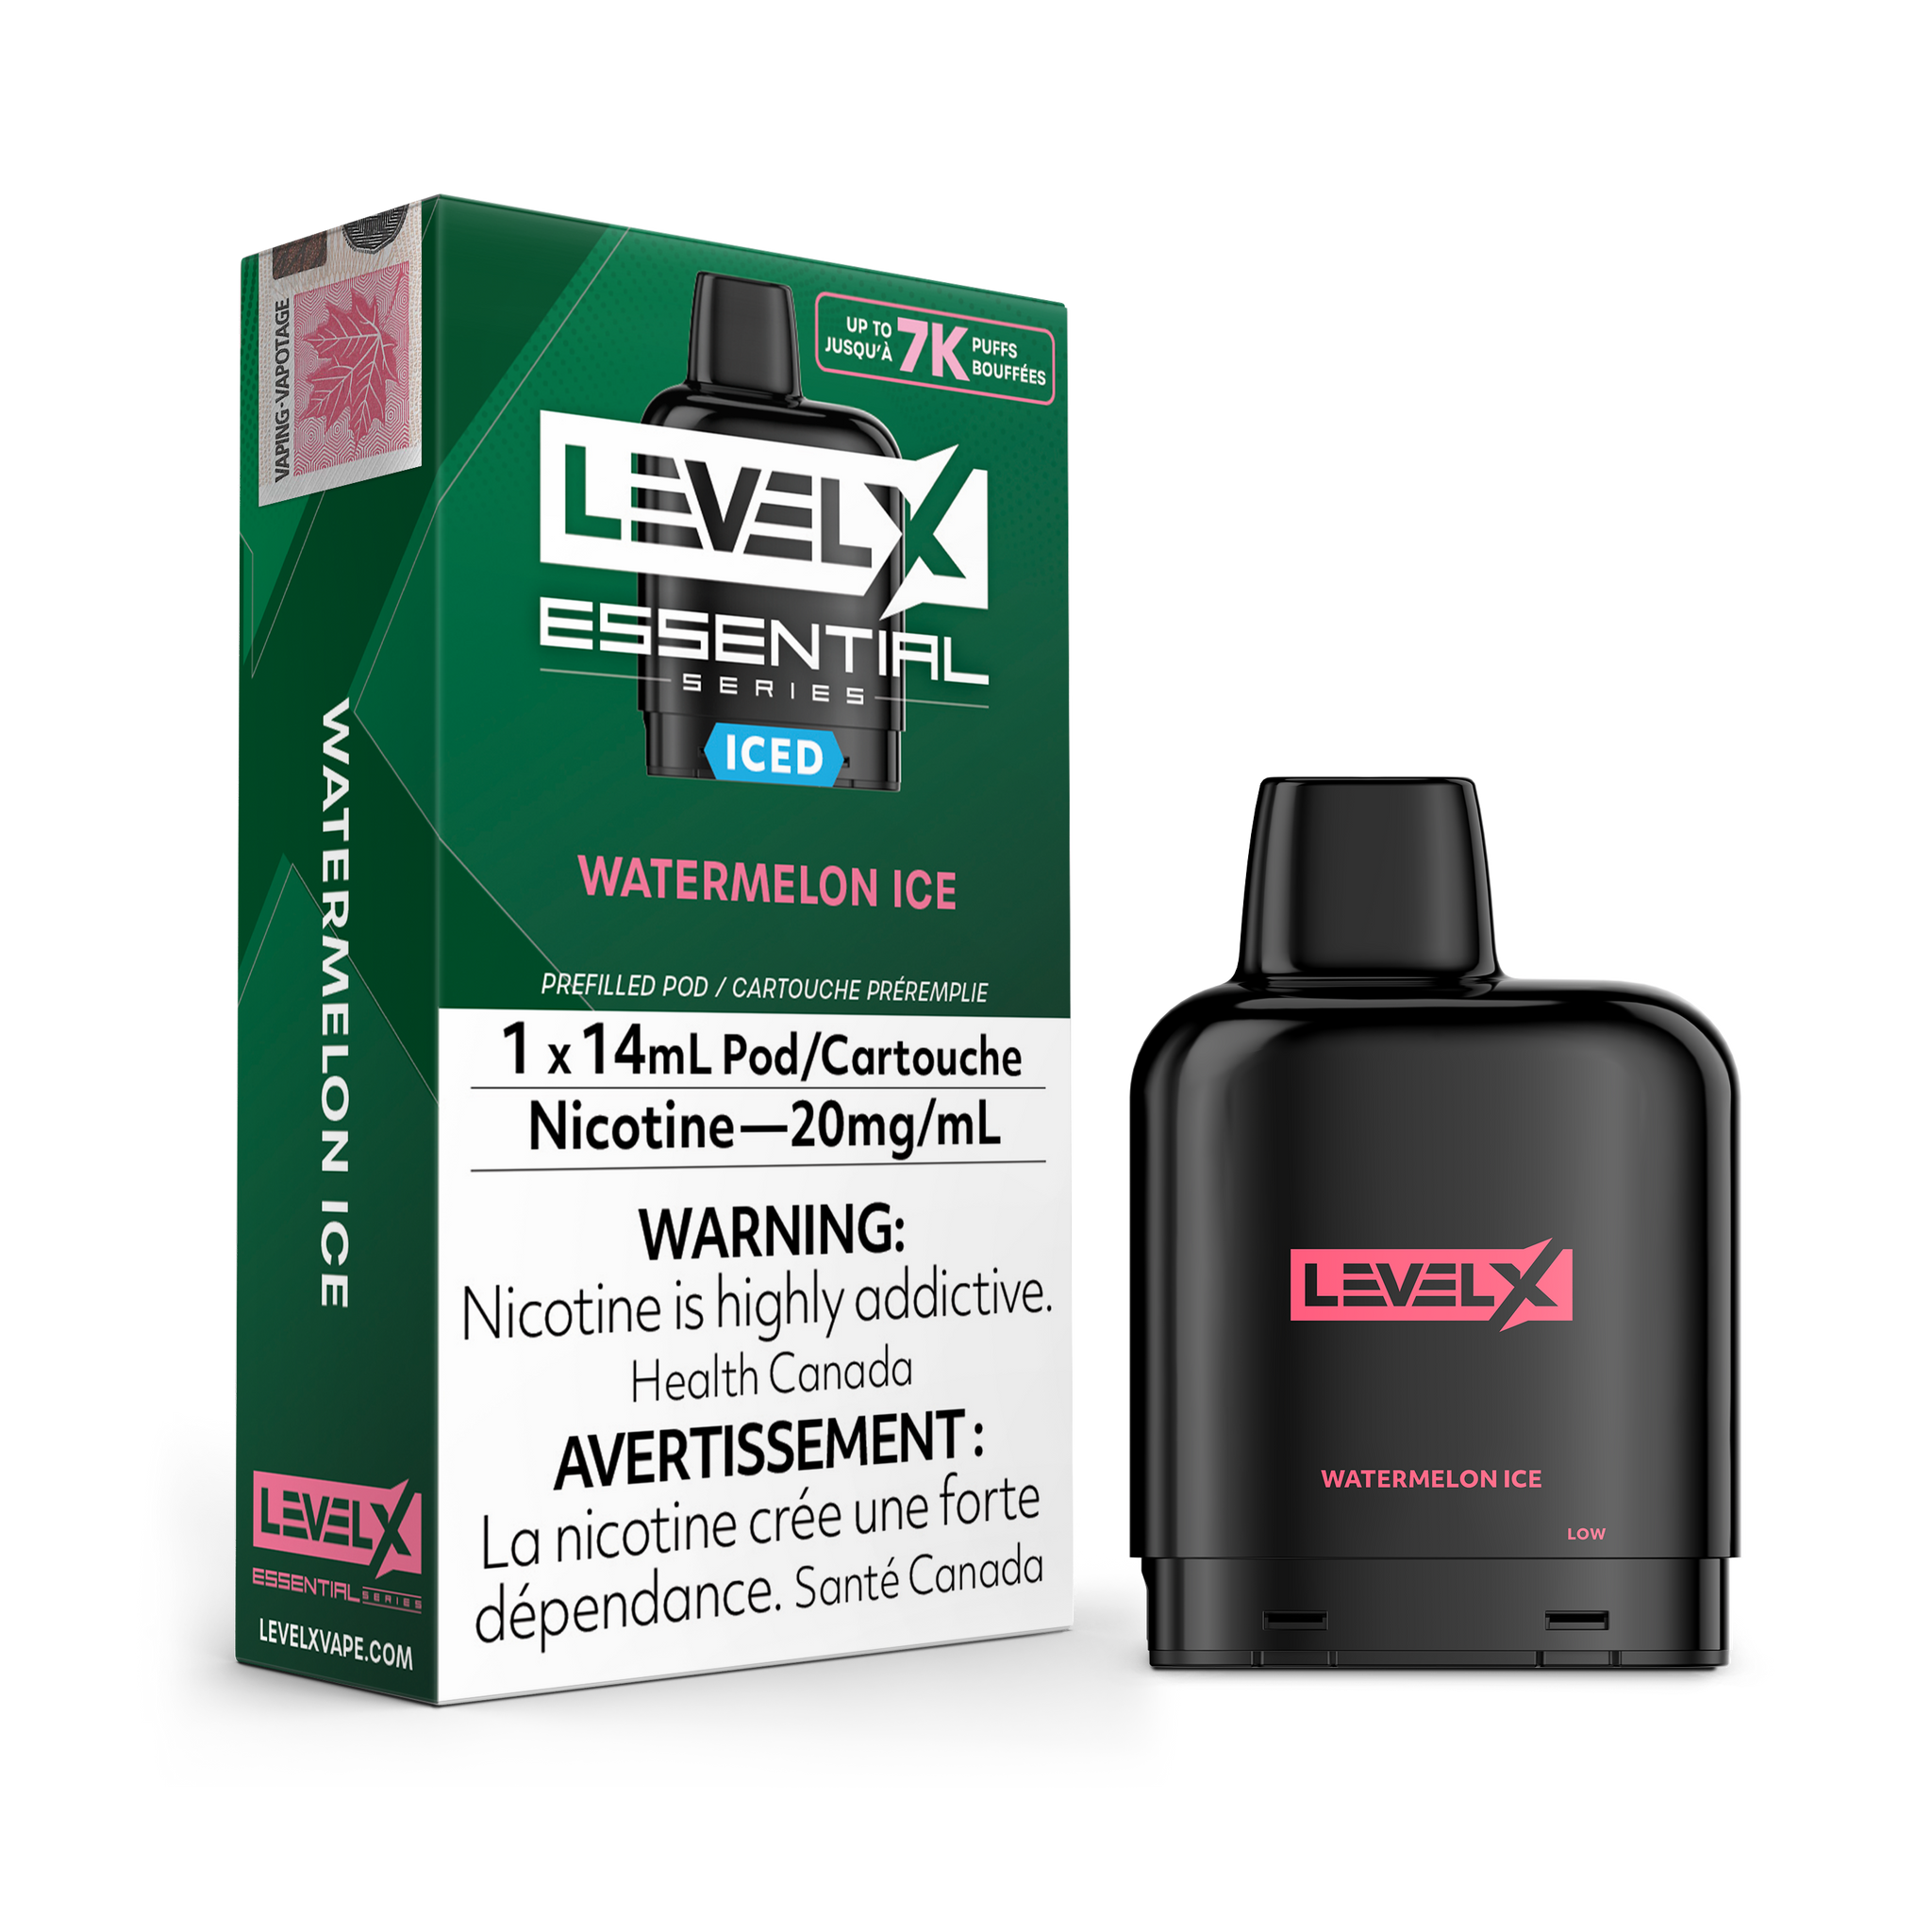 Level X Essential Series